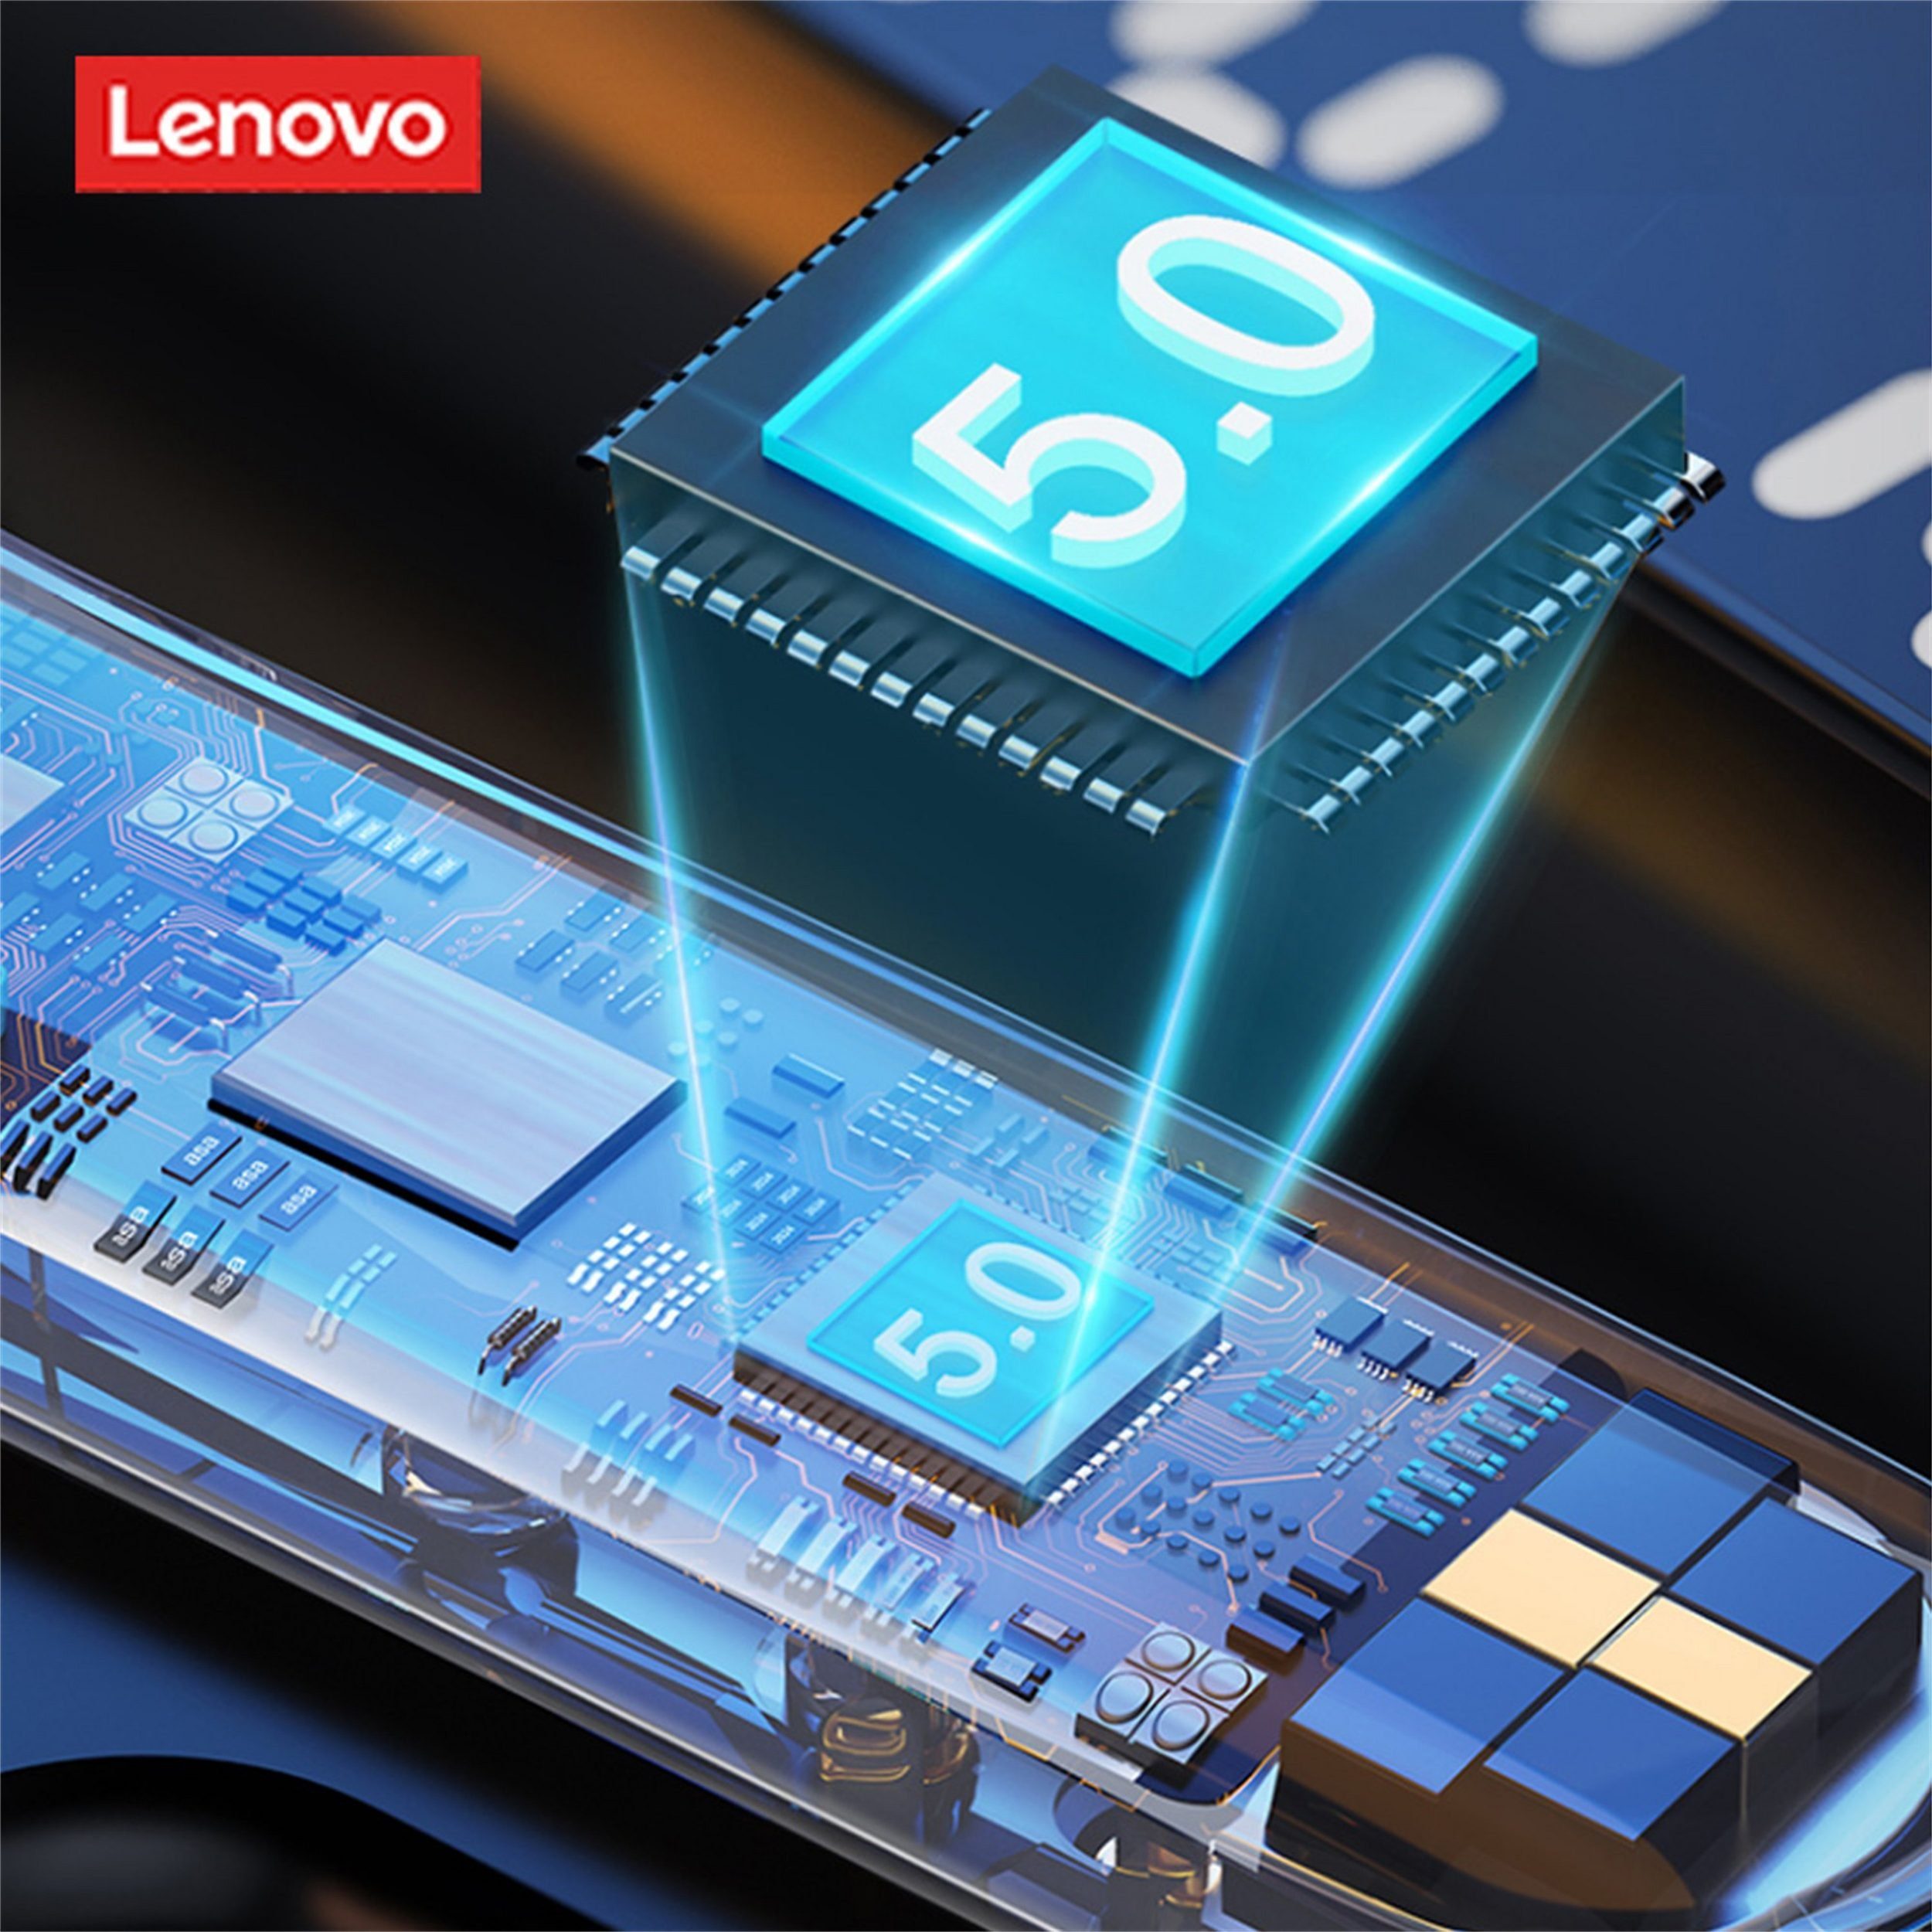 5.0, - Touch-Steuerung Lenovo mit Schwarz) kabellos, Stereo-Ohrhörer Kopfhörer-Ladehülle mAh (True Wireless, 300 mit QT81 Bluetooth-Kopfhörer Siri, Bluetooth